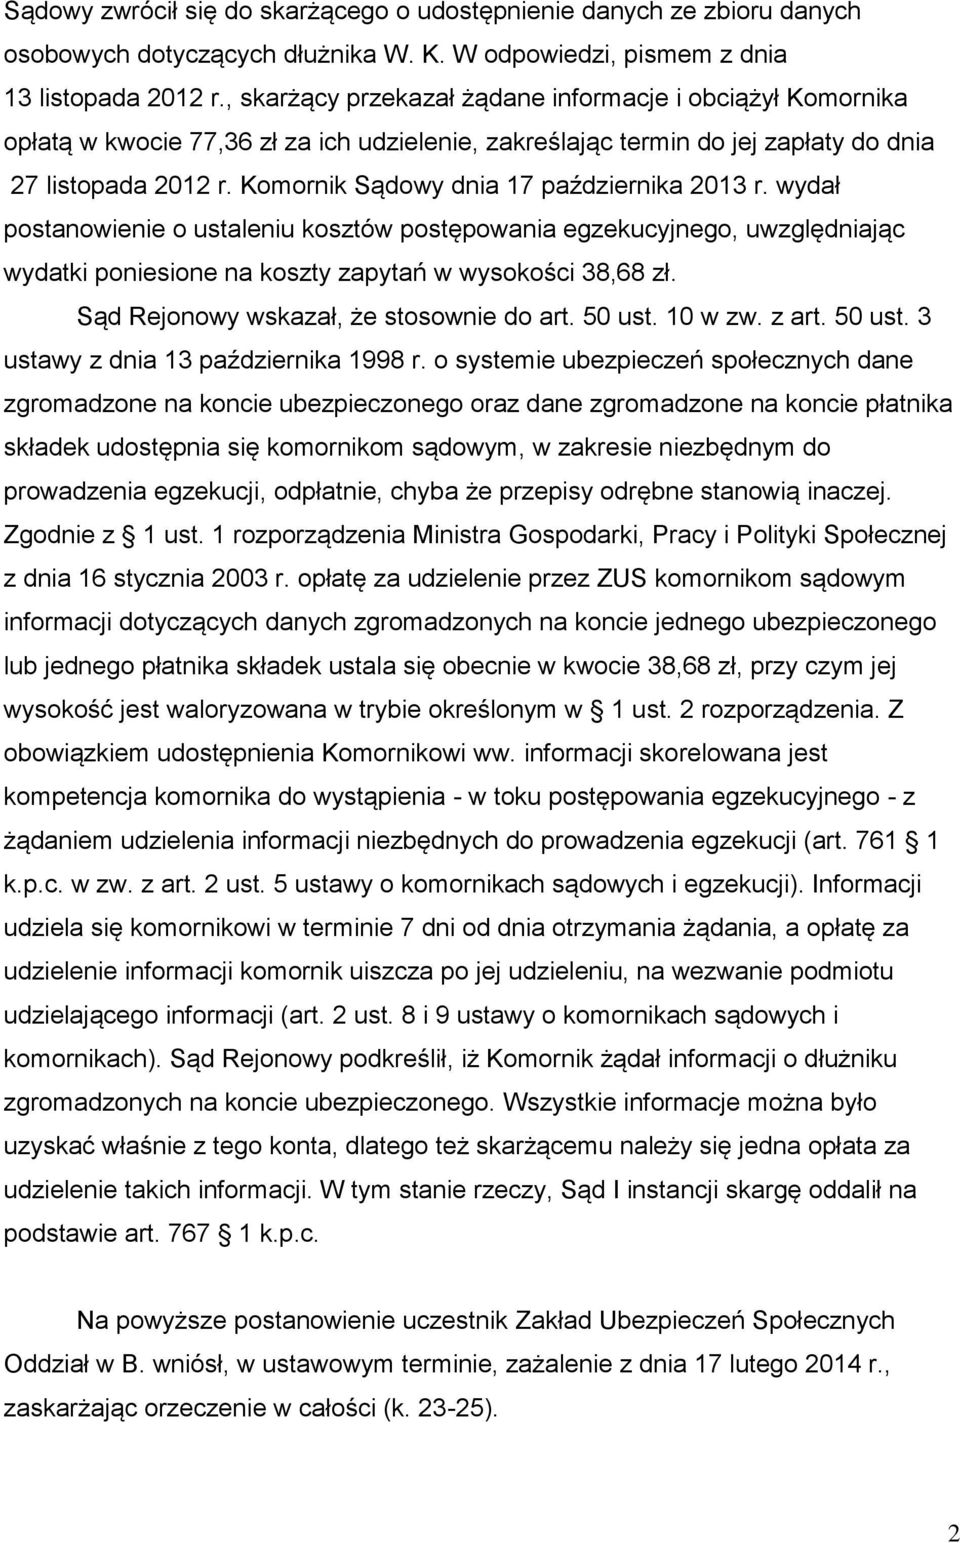 Komornik Sądowy dnia 17 października 2013 r. wydał postanowienie o ustaleniu kosztów postępowania egzekucyjnego, uwzględniając wydatki poniesione na koszty zapytań w wysokości 38,68 zł.